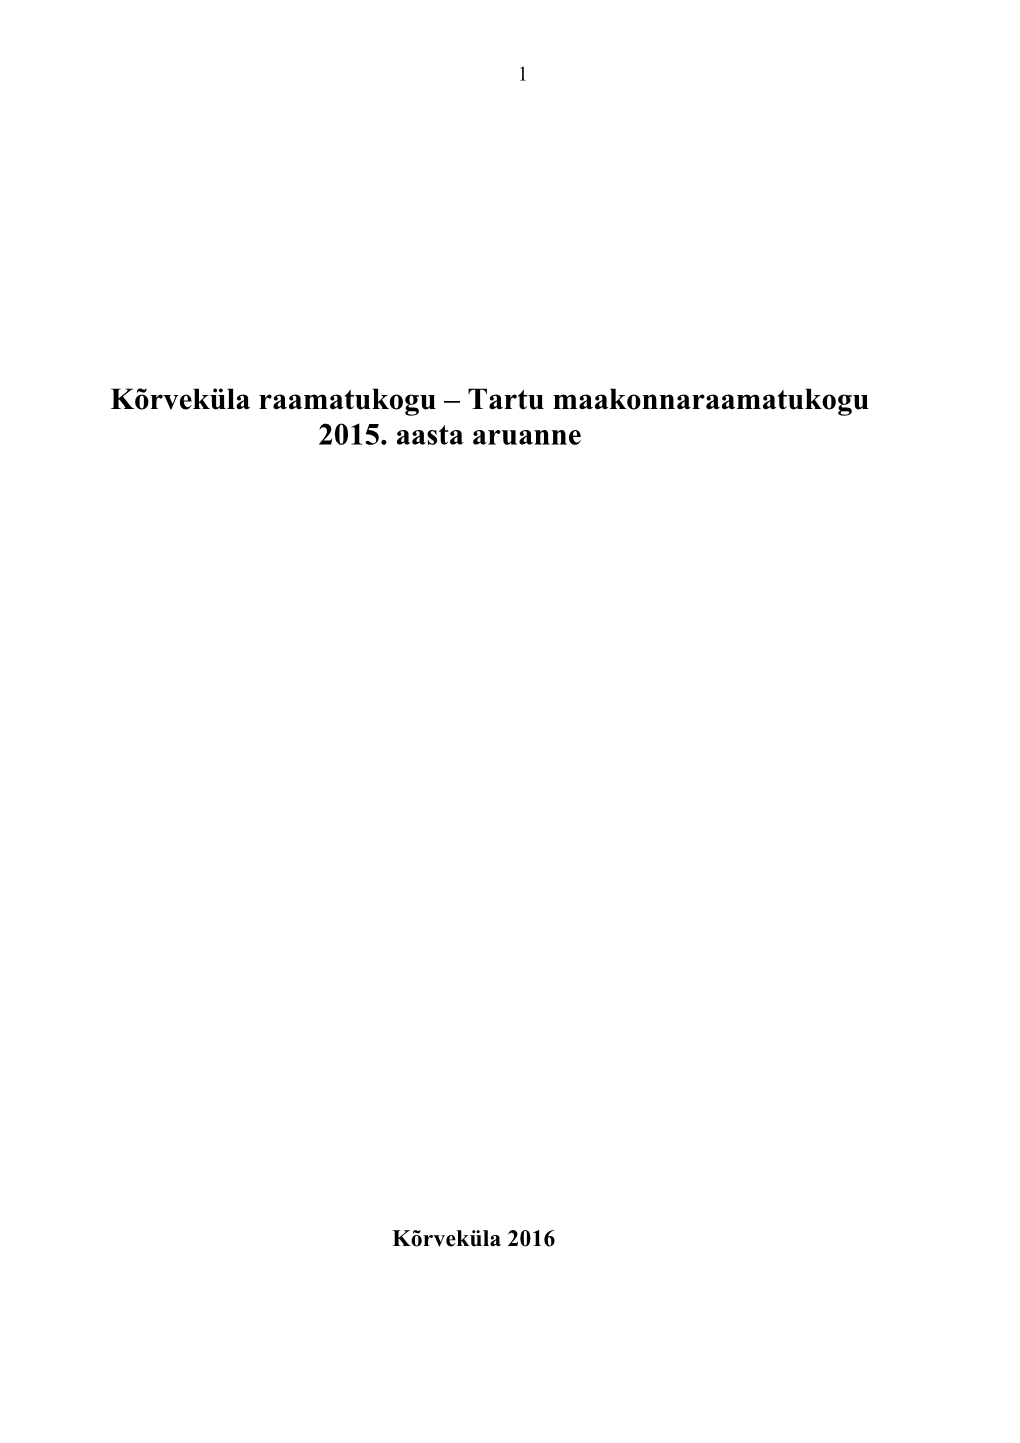 Kõrveküla Raamatukogu 2015. A. Aruanne